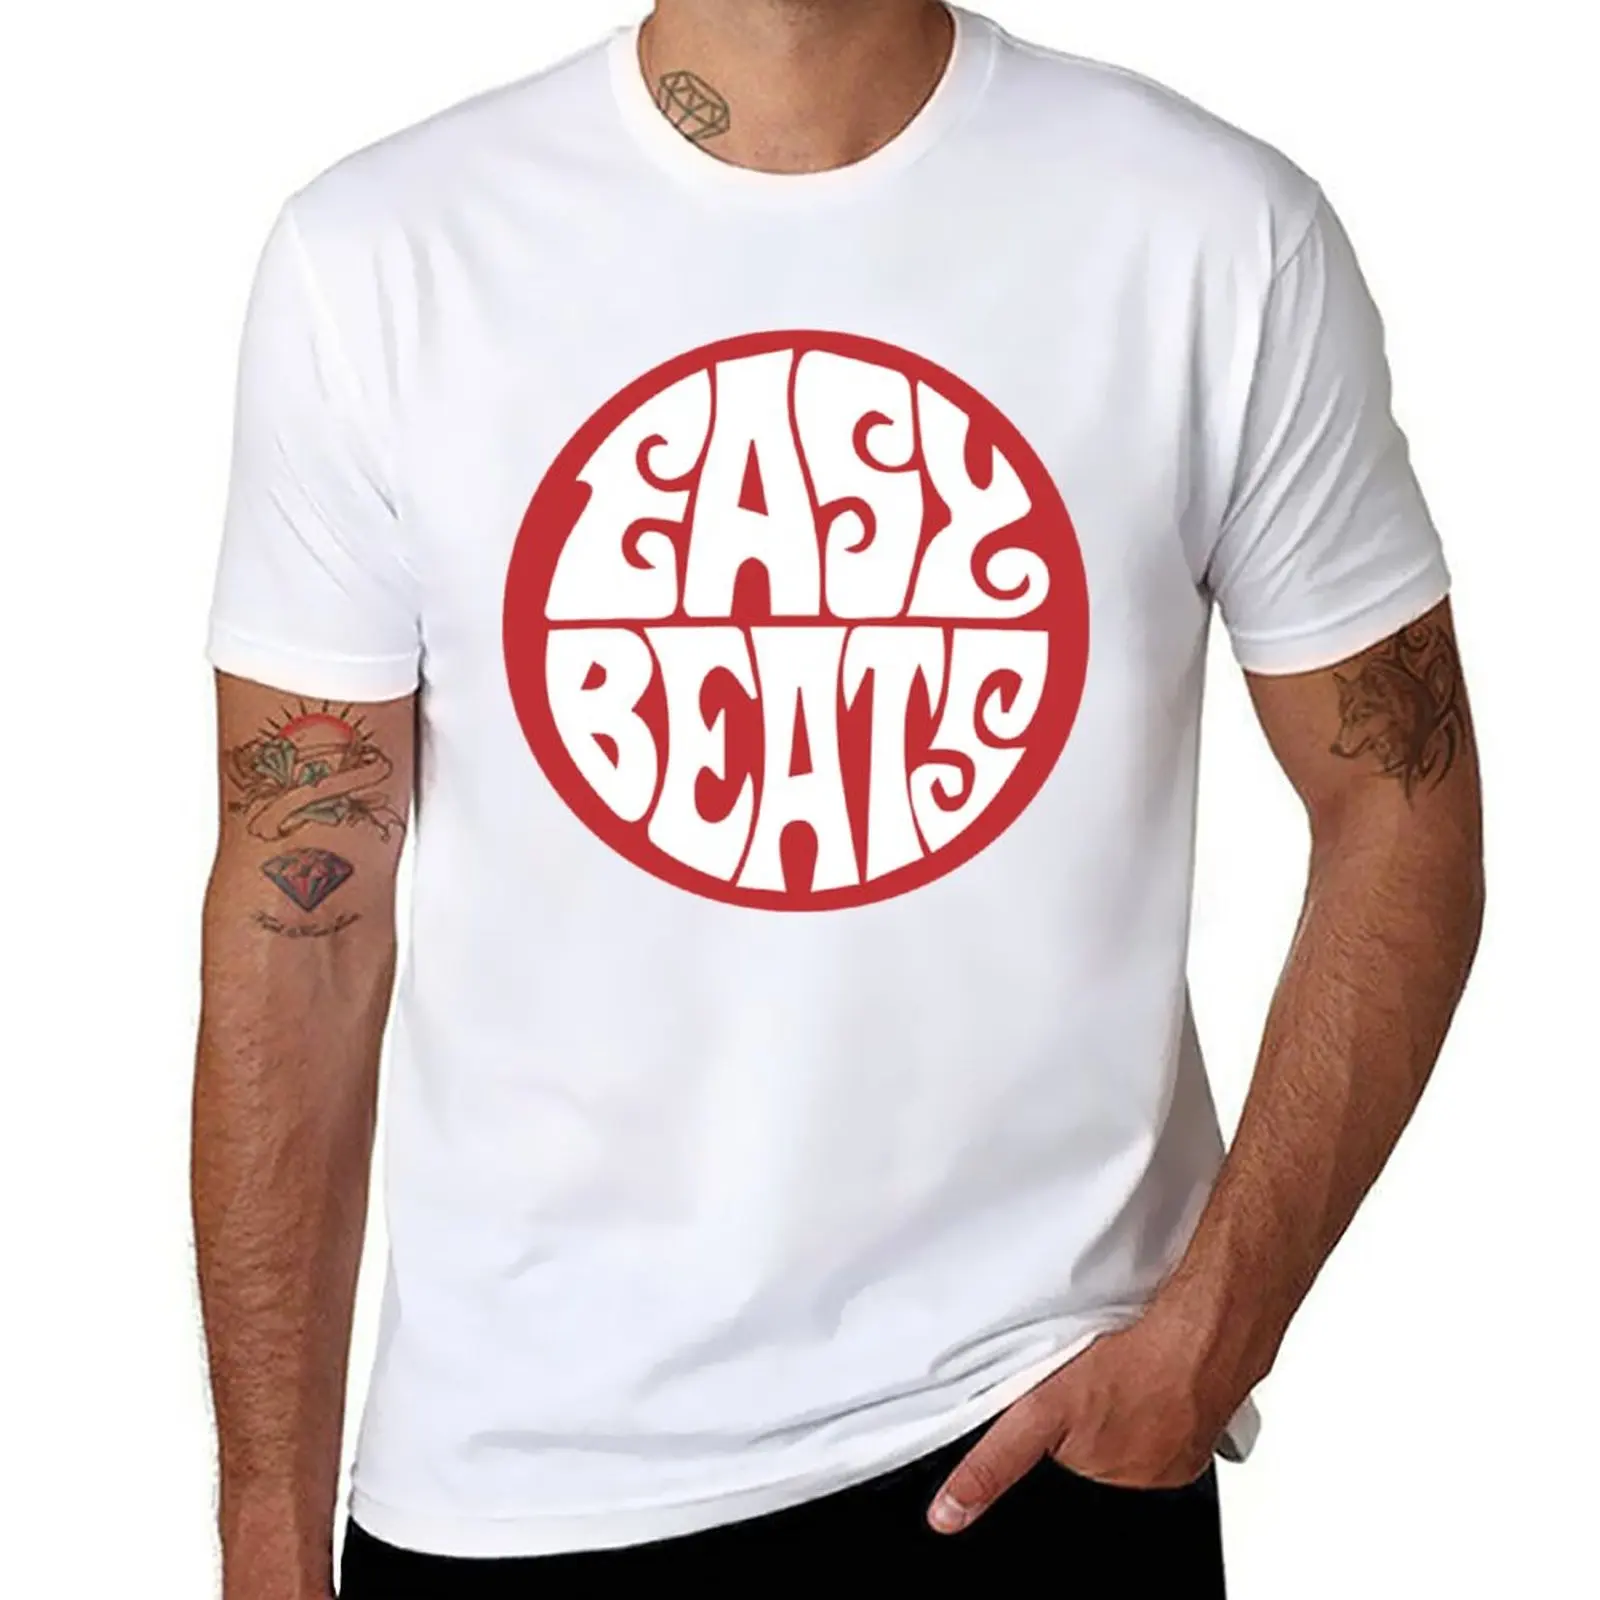 

Новая классическая футболка с логотипом Easybeats, забавная футболка, летний топ, кавайная одежда, черные футболки для мужчин